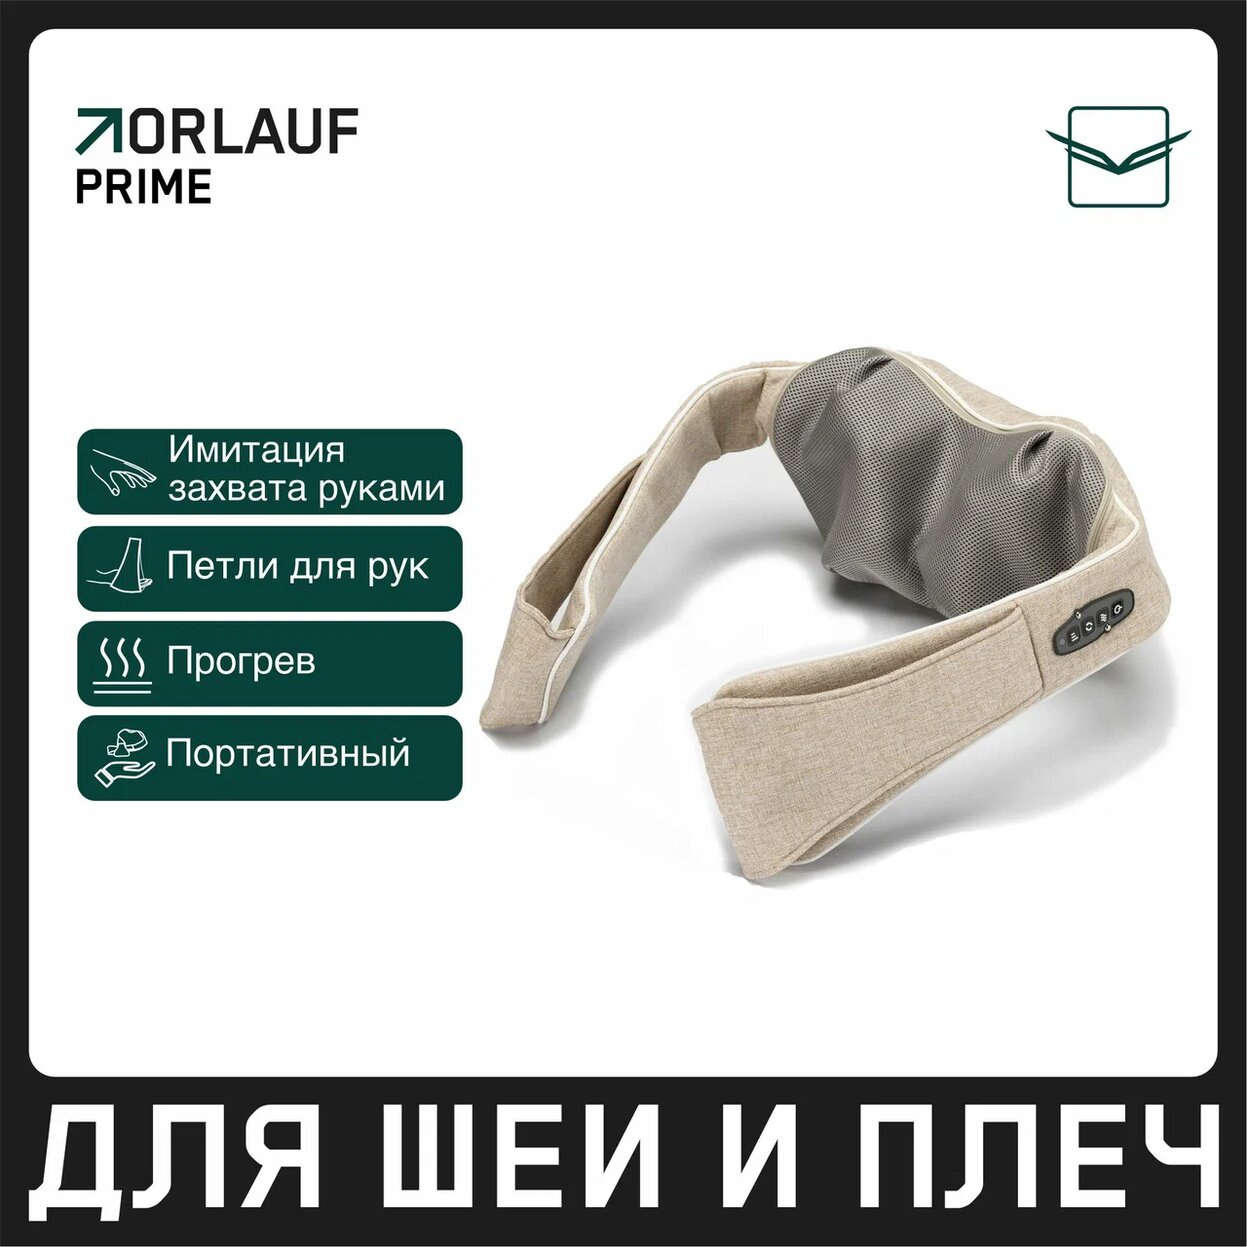 Orlauf Prime из каталога портативных массажеров в Волгограде по цене 11900 ₽